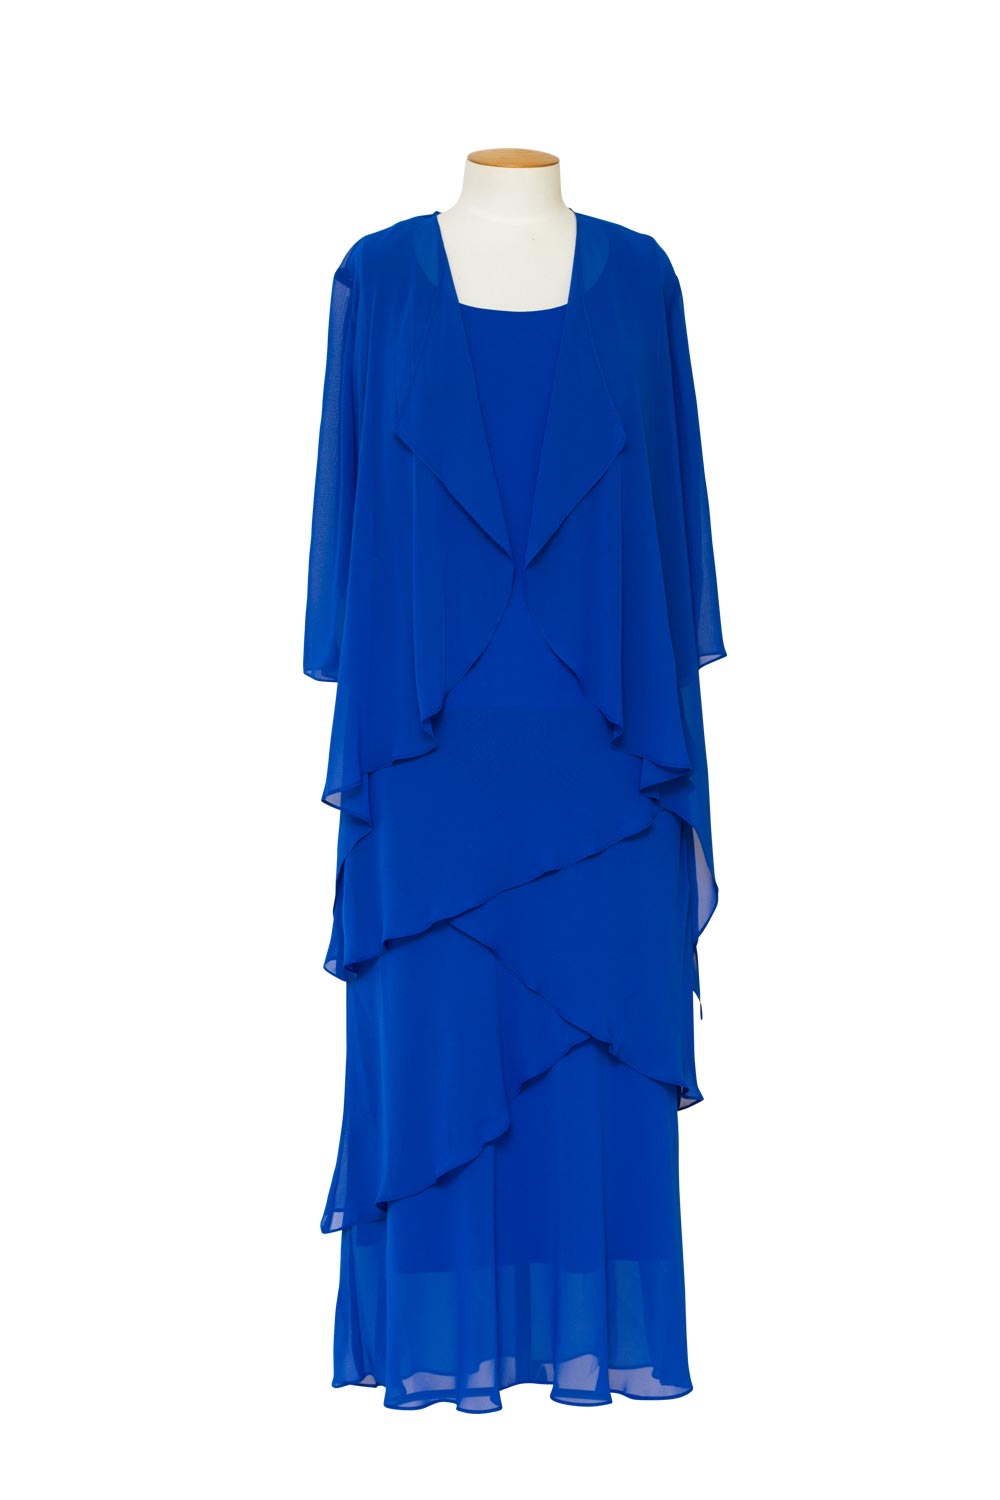 Layla Jones - LJ0148 Layered Chiffon Dress with 3/4 Sleeve Jacket ...